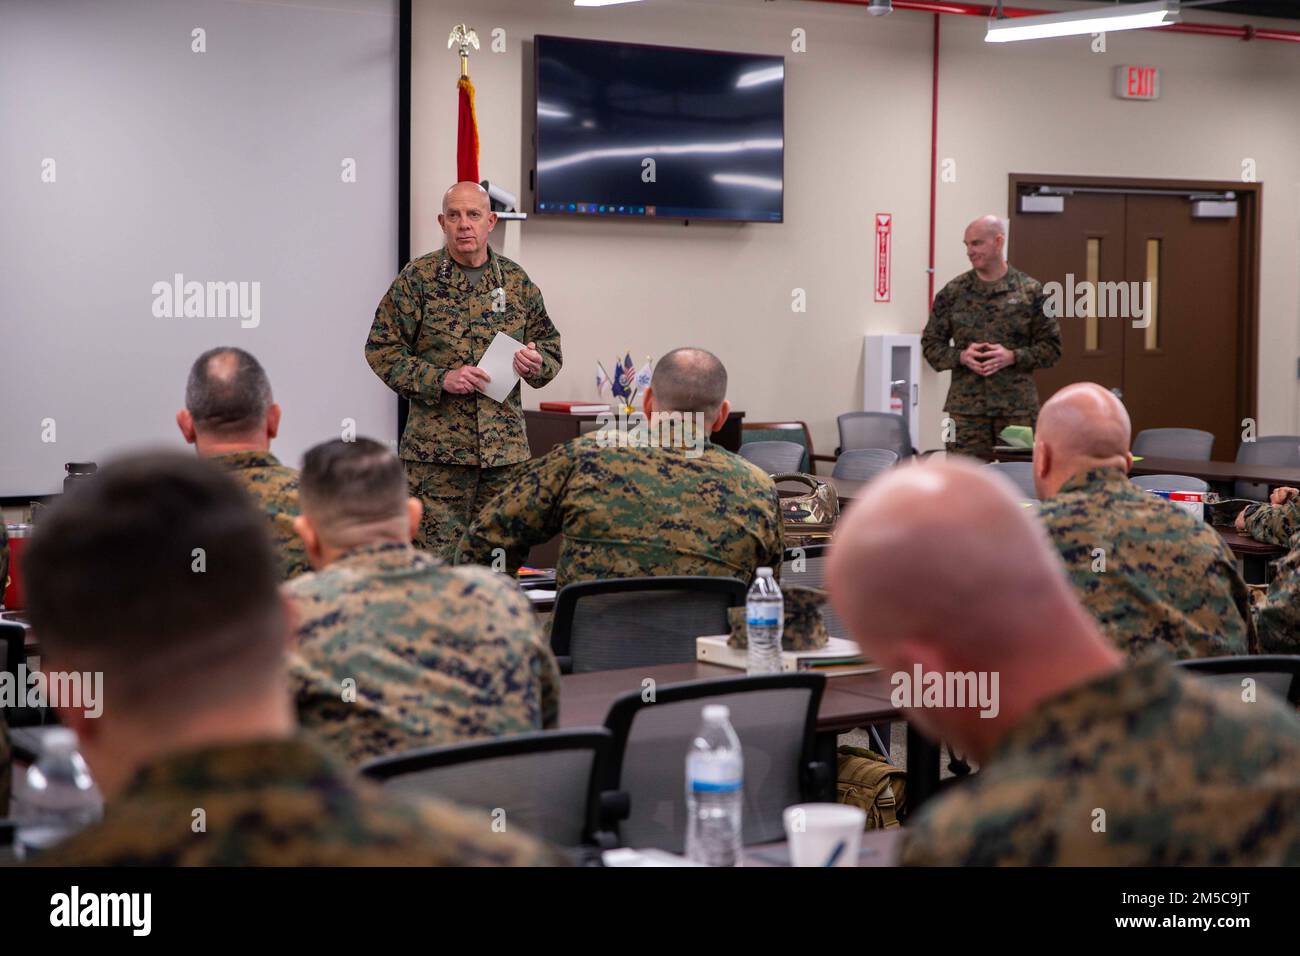 EE.UU El General del Cuerpo de Marines David H. Berger, Comandante del Cuerpo de Marines, habla con los infantes de marina que asisten al Simposio Jefe de Operaciones de Elementos de Combate Terrestres (GCE) en la Base del Cuerpo de Marines Quantico, Virginia, 28 de febrero de 2022. El Comandante habló en el simposio para compartir su visión sobre la gestión del talento y las capacidades futuras de la CME. El simposio de jefes de operaciones de elementos de combate terrestre es un único foro para discutir, desarrollar y consolidar las prioridades comunes de la CME en preparación para su presentación a los comandantes de la División de Marines en la próxima conferencia anual de la CME. Foto de stock